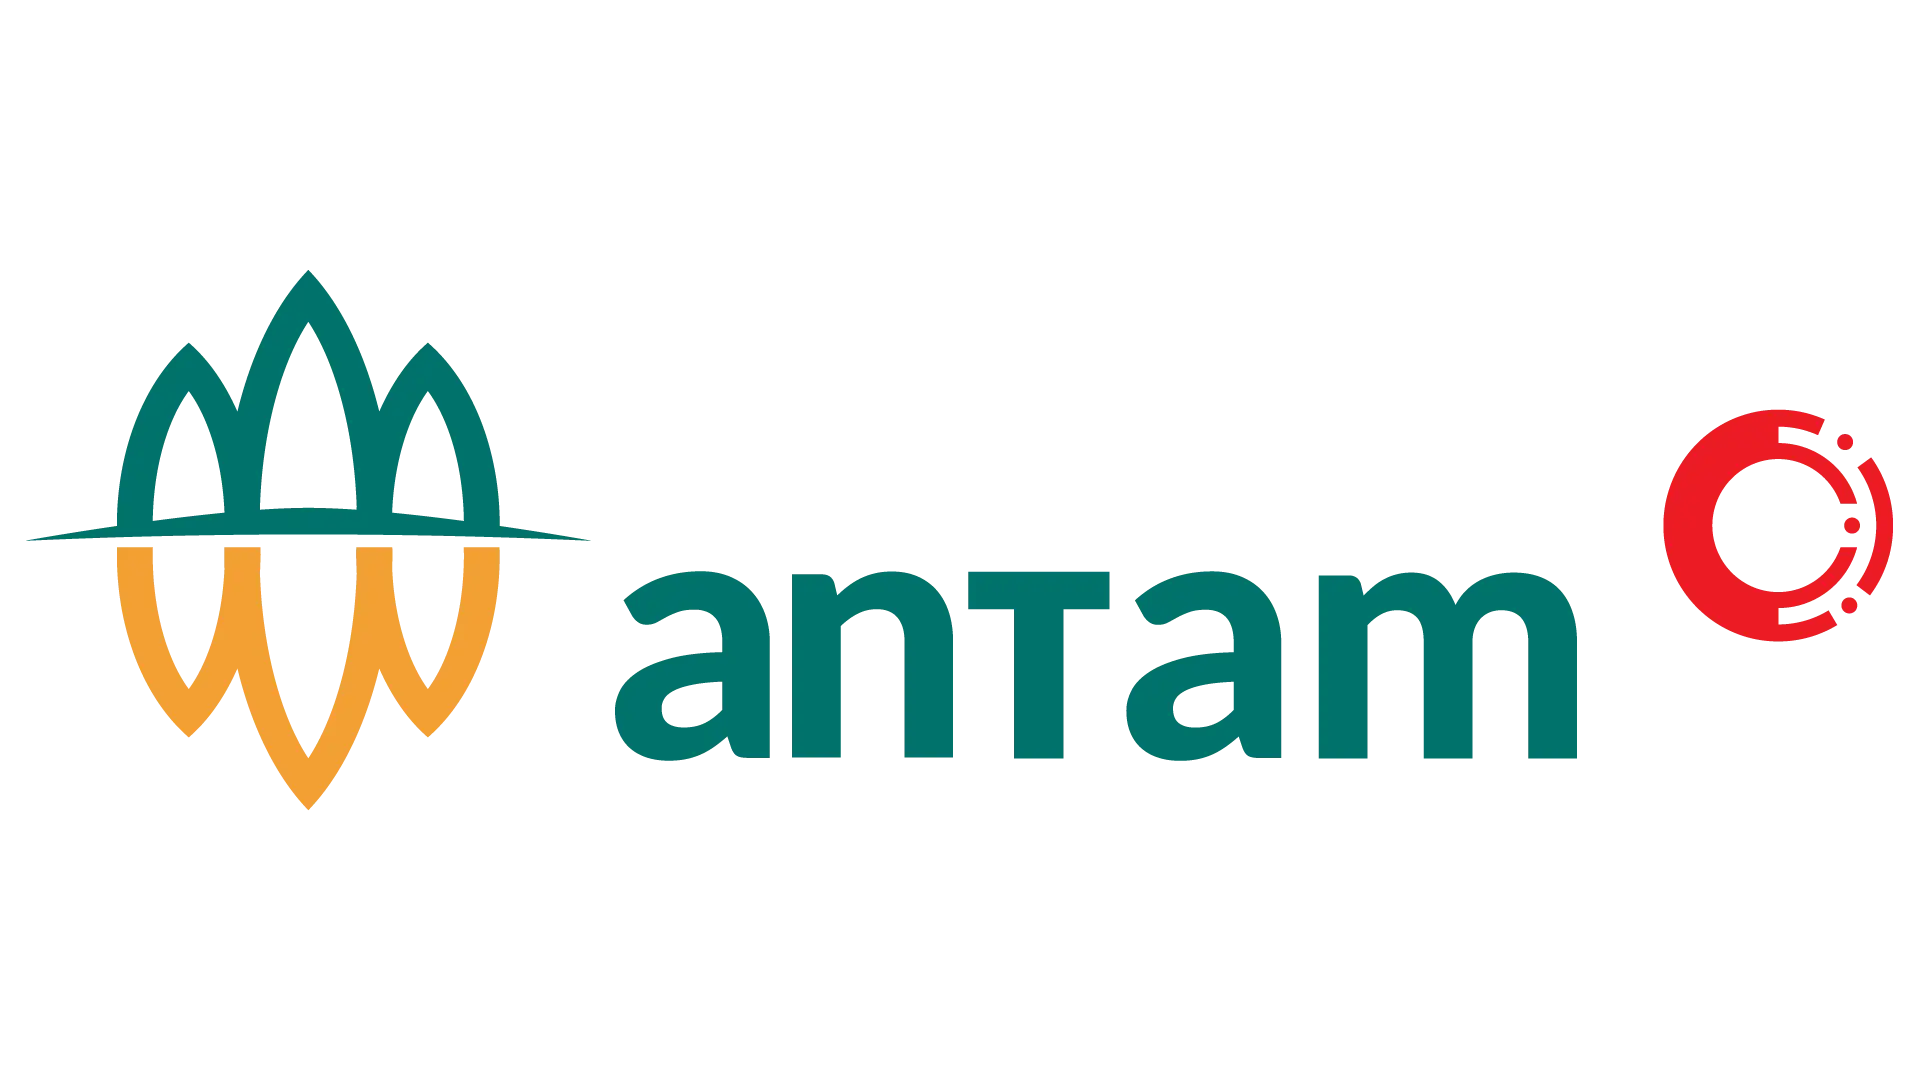 Pengelola Chatbot di bidang industri pertambangan yang dimiliki oleh perusahaan Antam